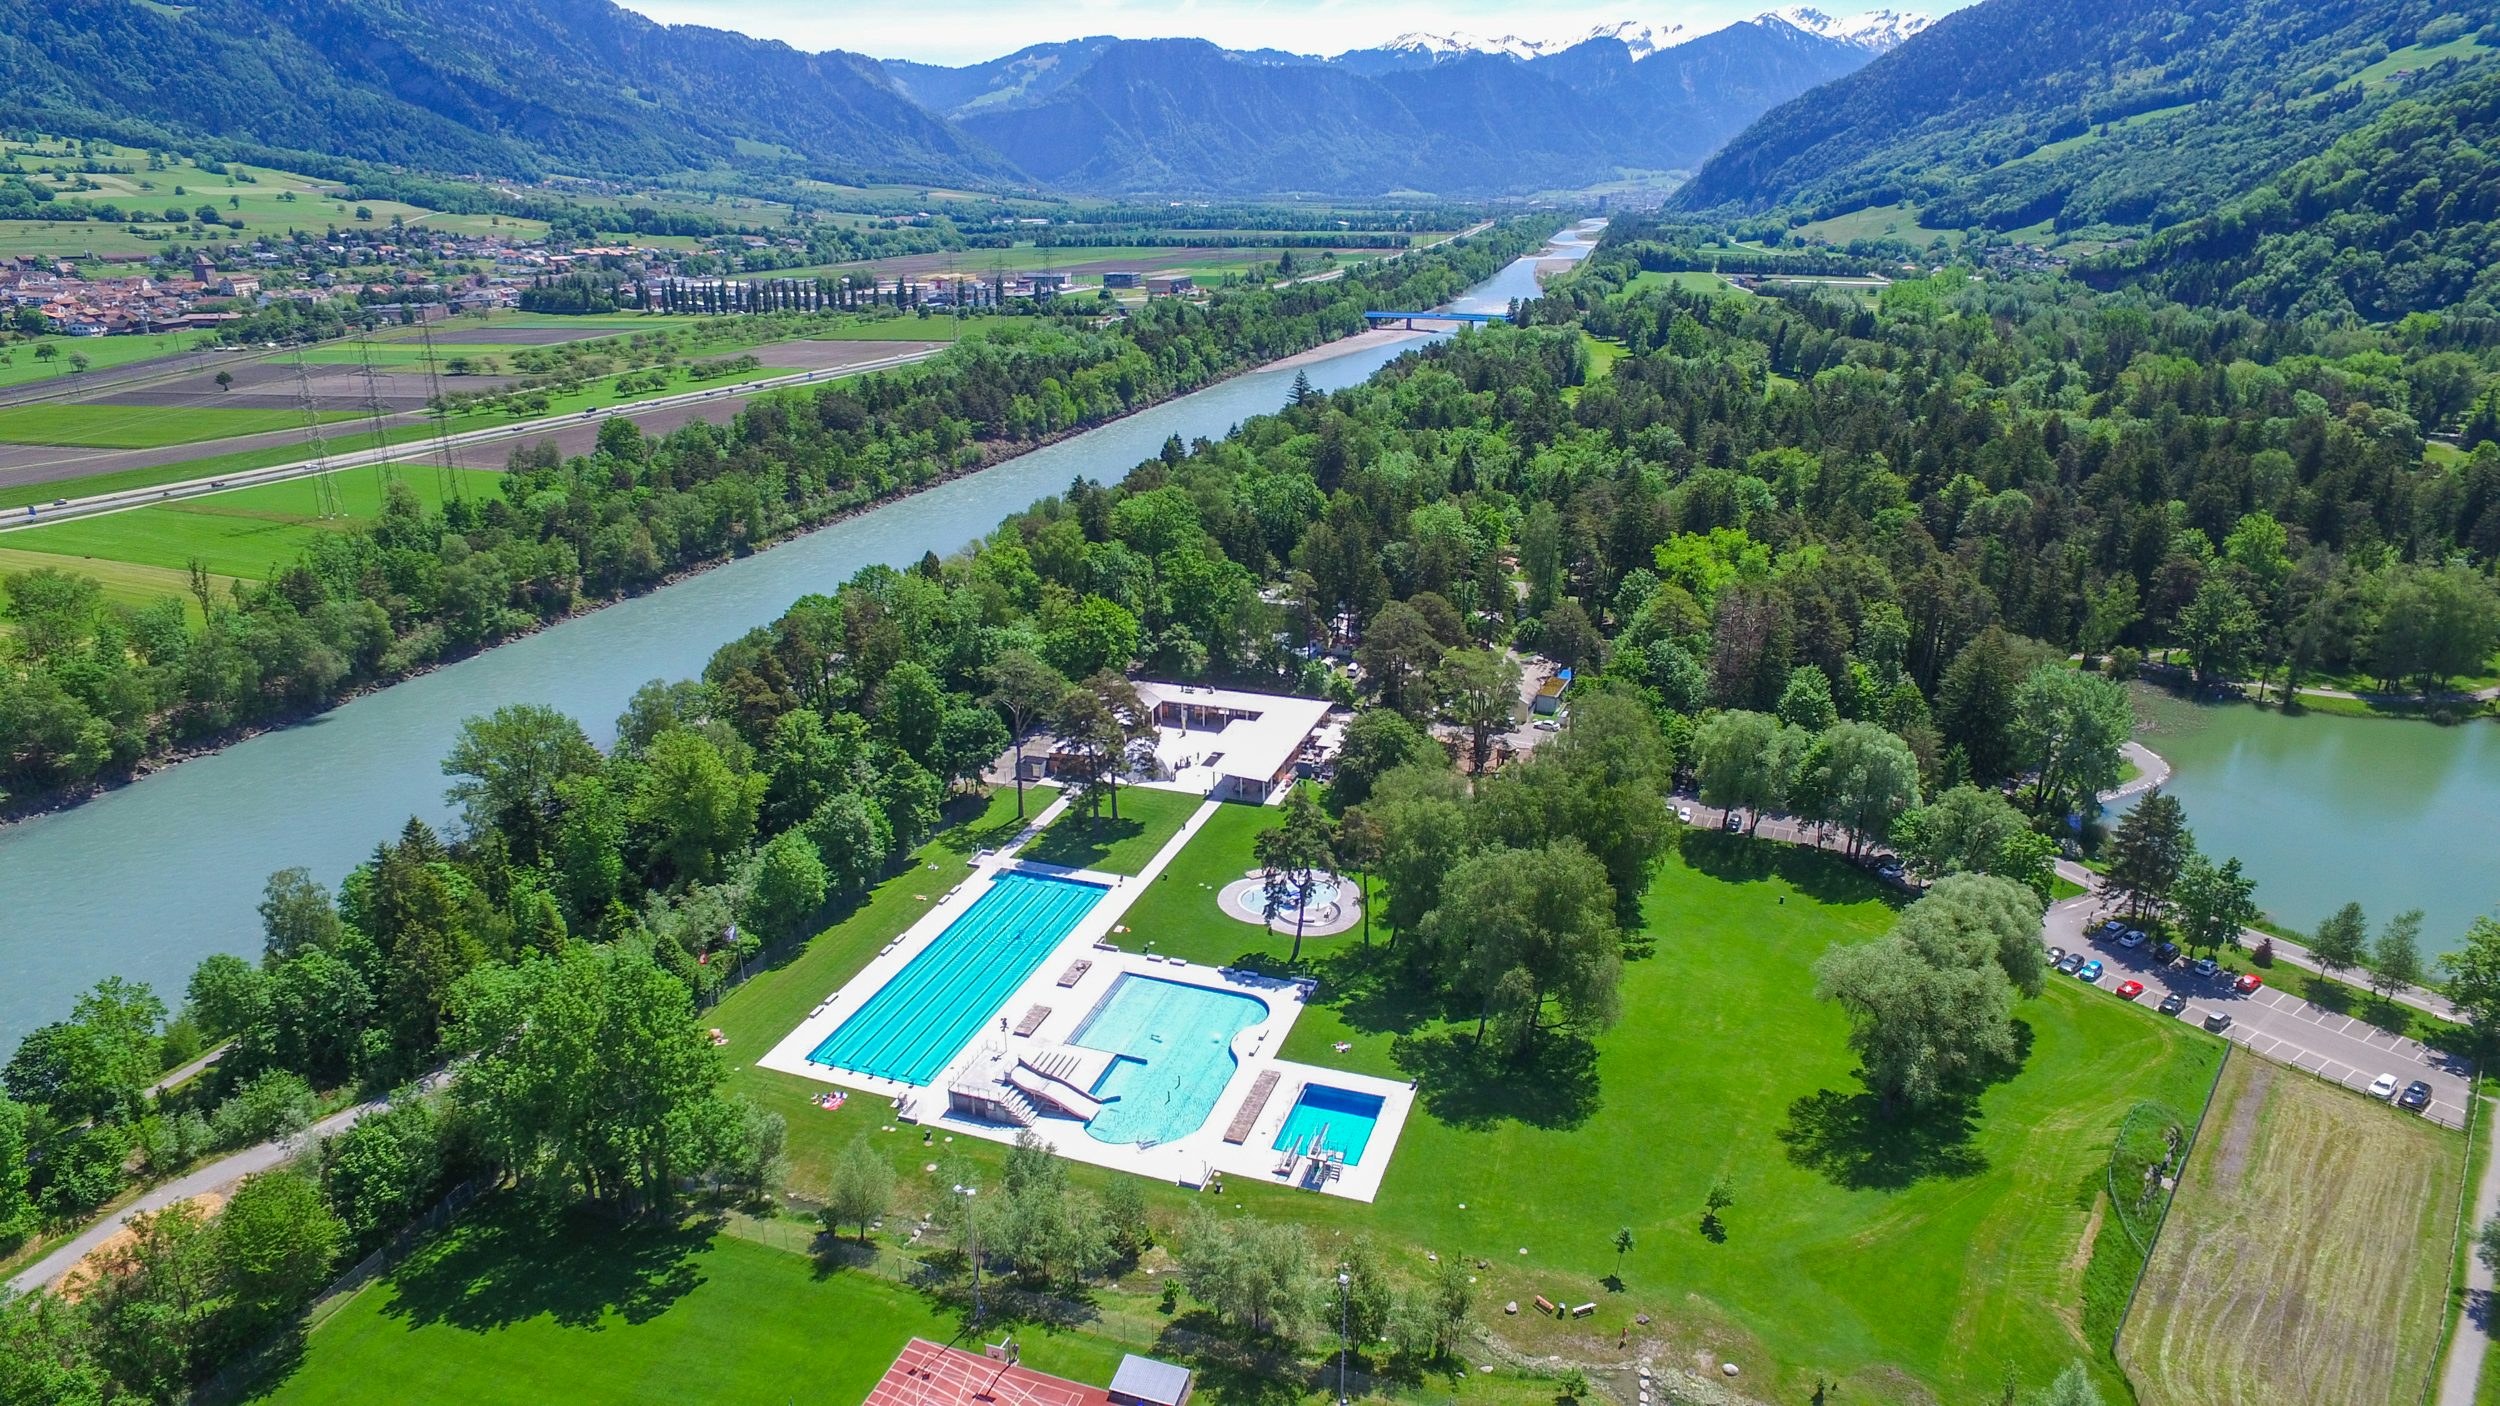 Ein grüner Park mit großem Schwimmbecken aus der Luftperspektive fotografiert.